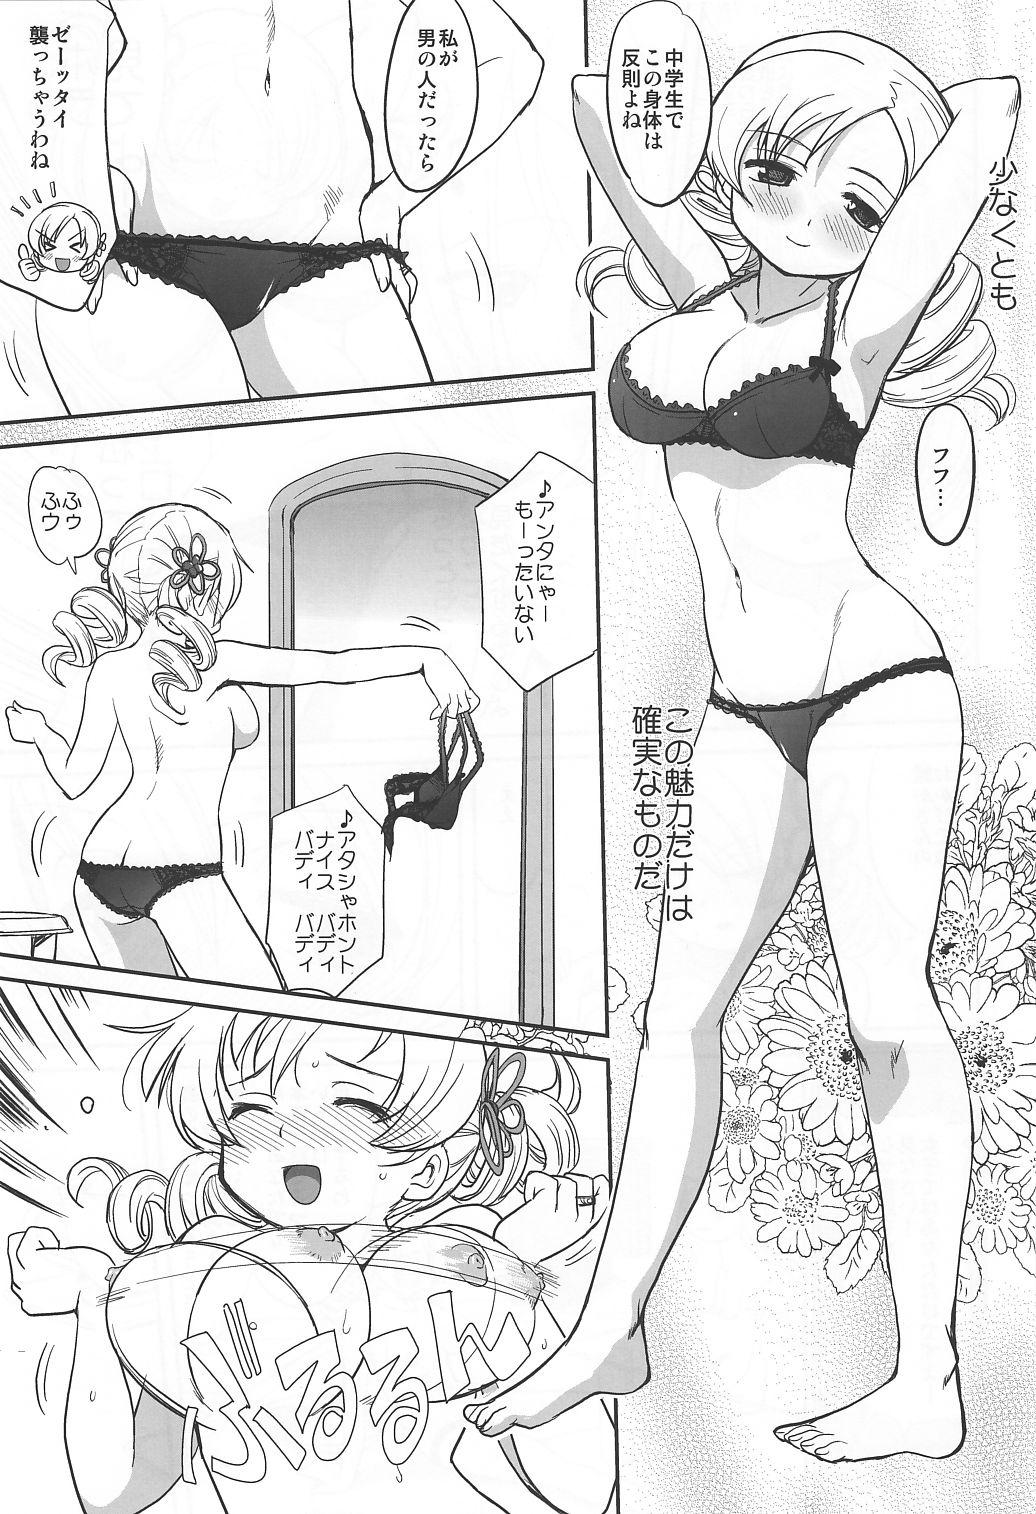 Oldman Dare mo Shiranai - Puella magi madoka magica Hardcore Sex - Page 8